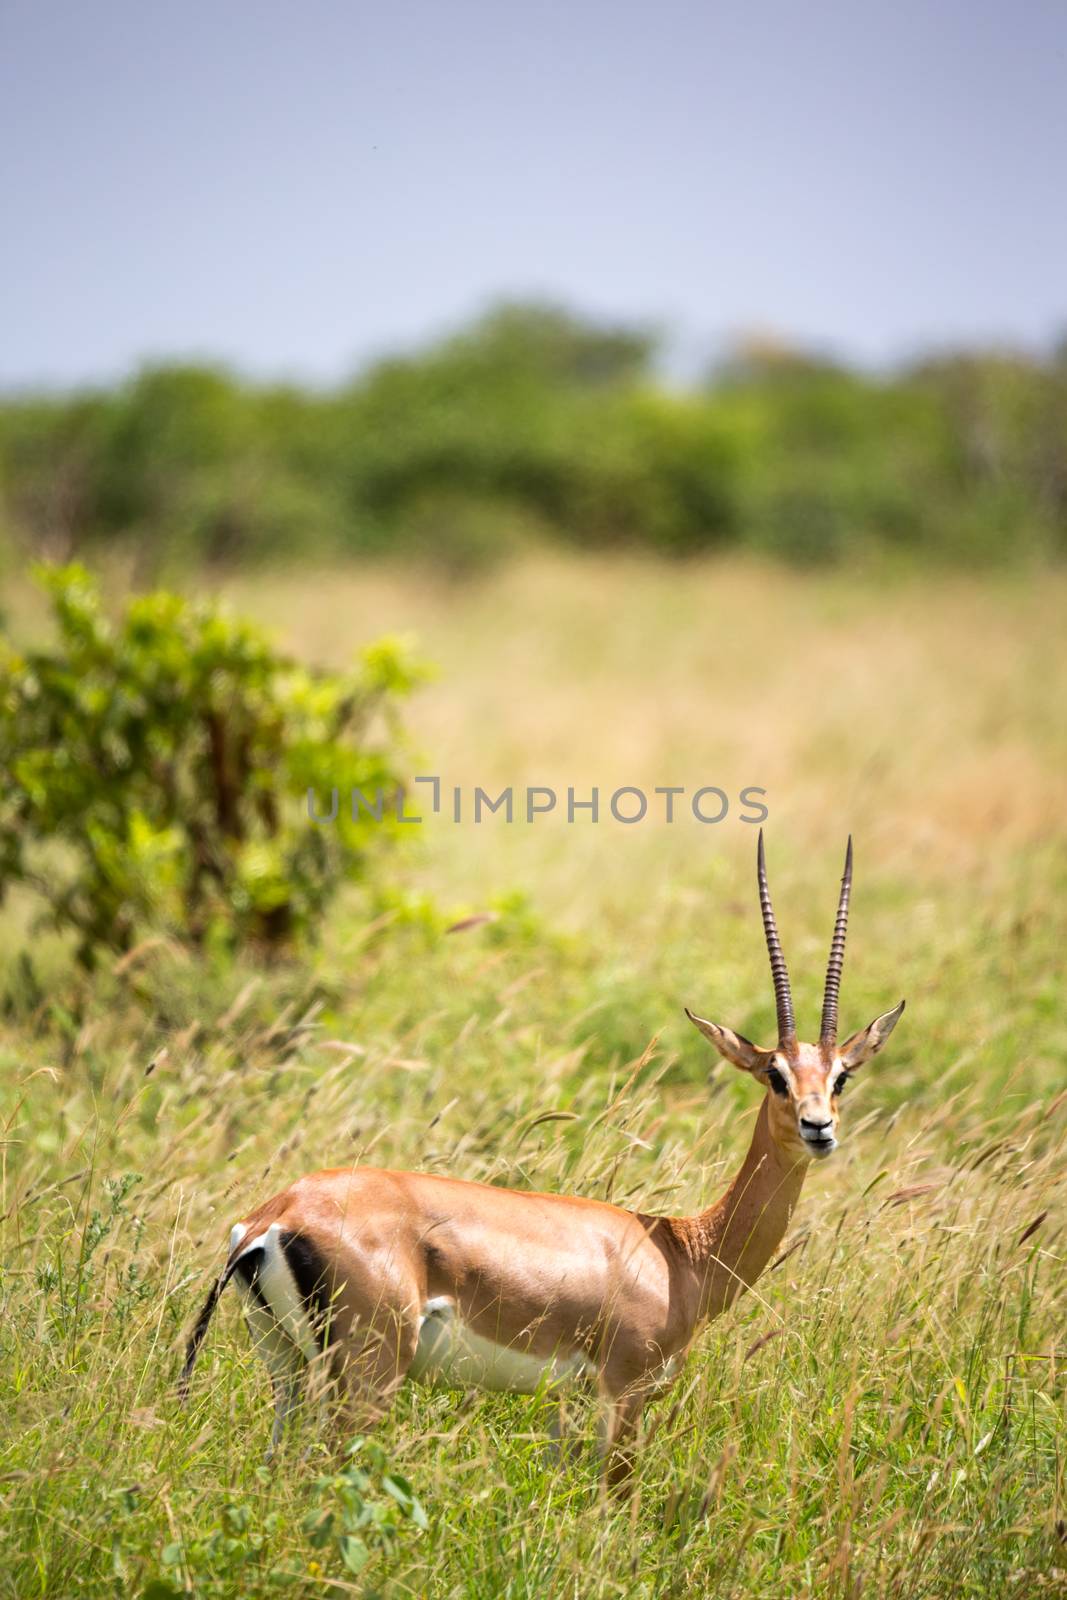 A Grant gazelle walks between tall grass by 25ehaag6